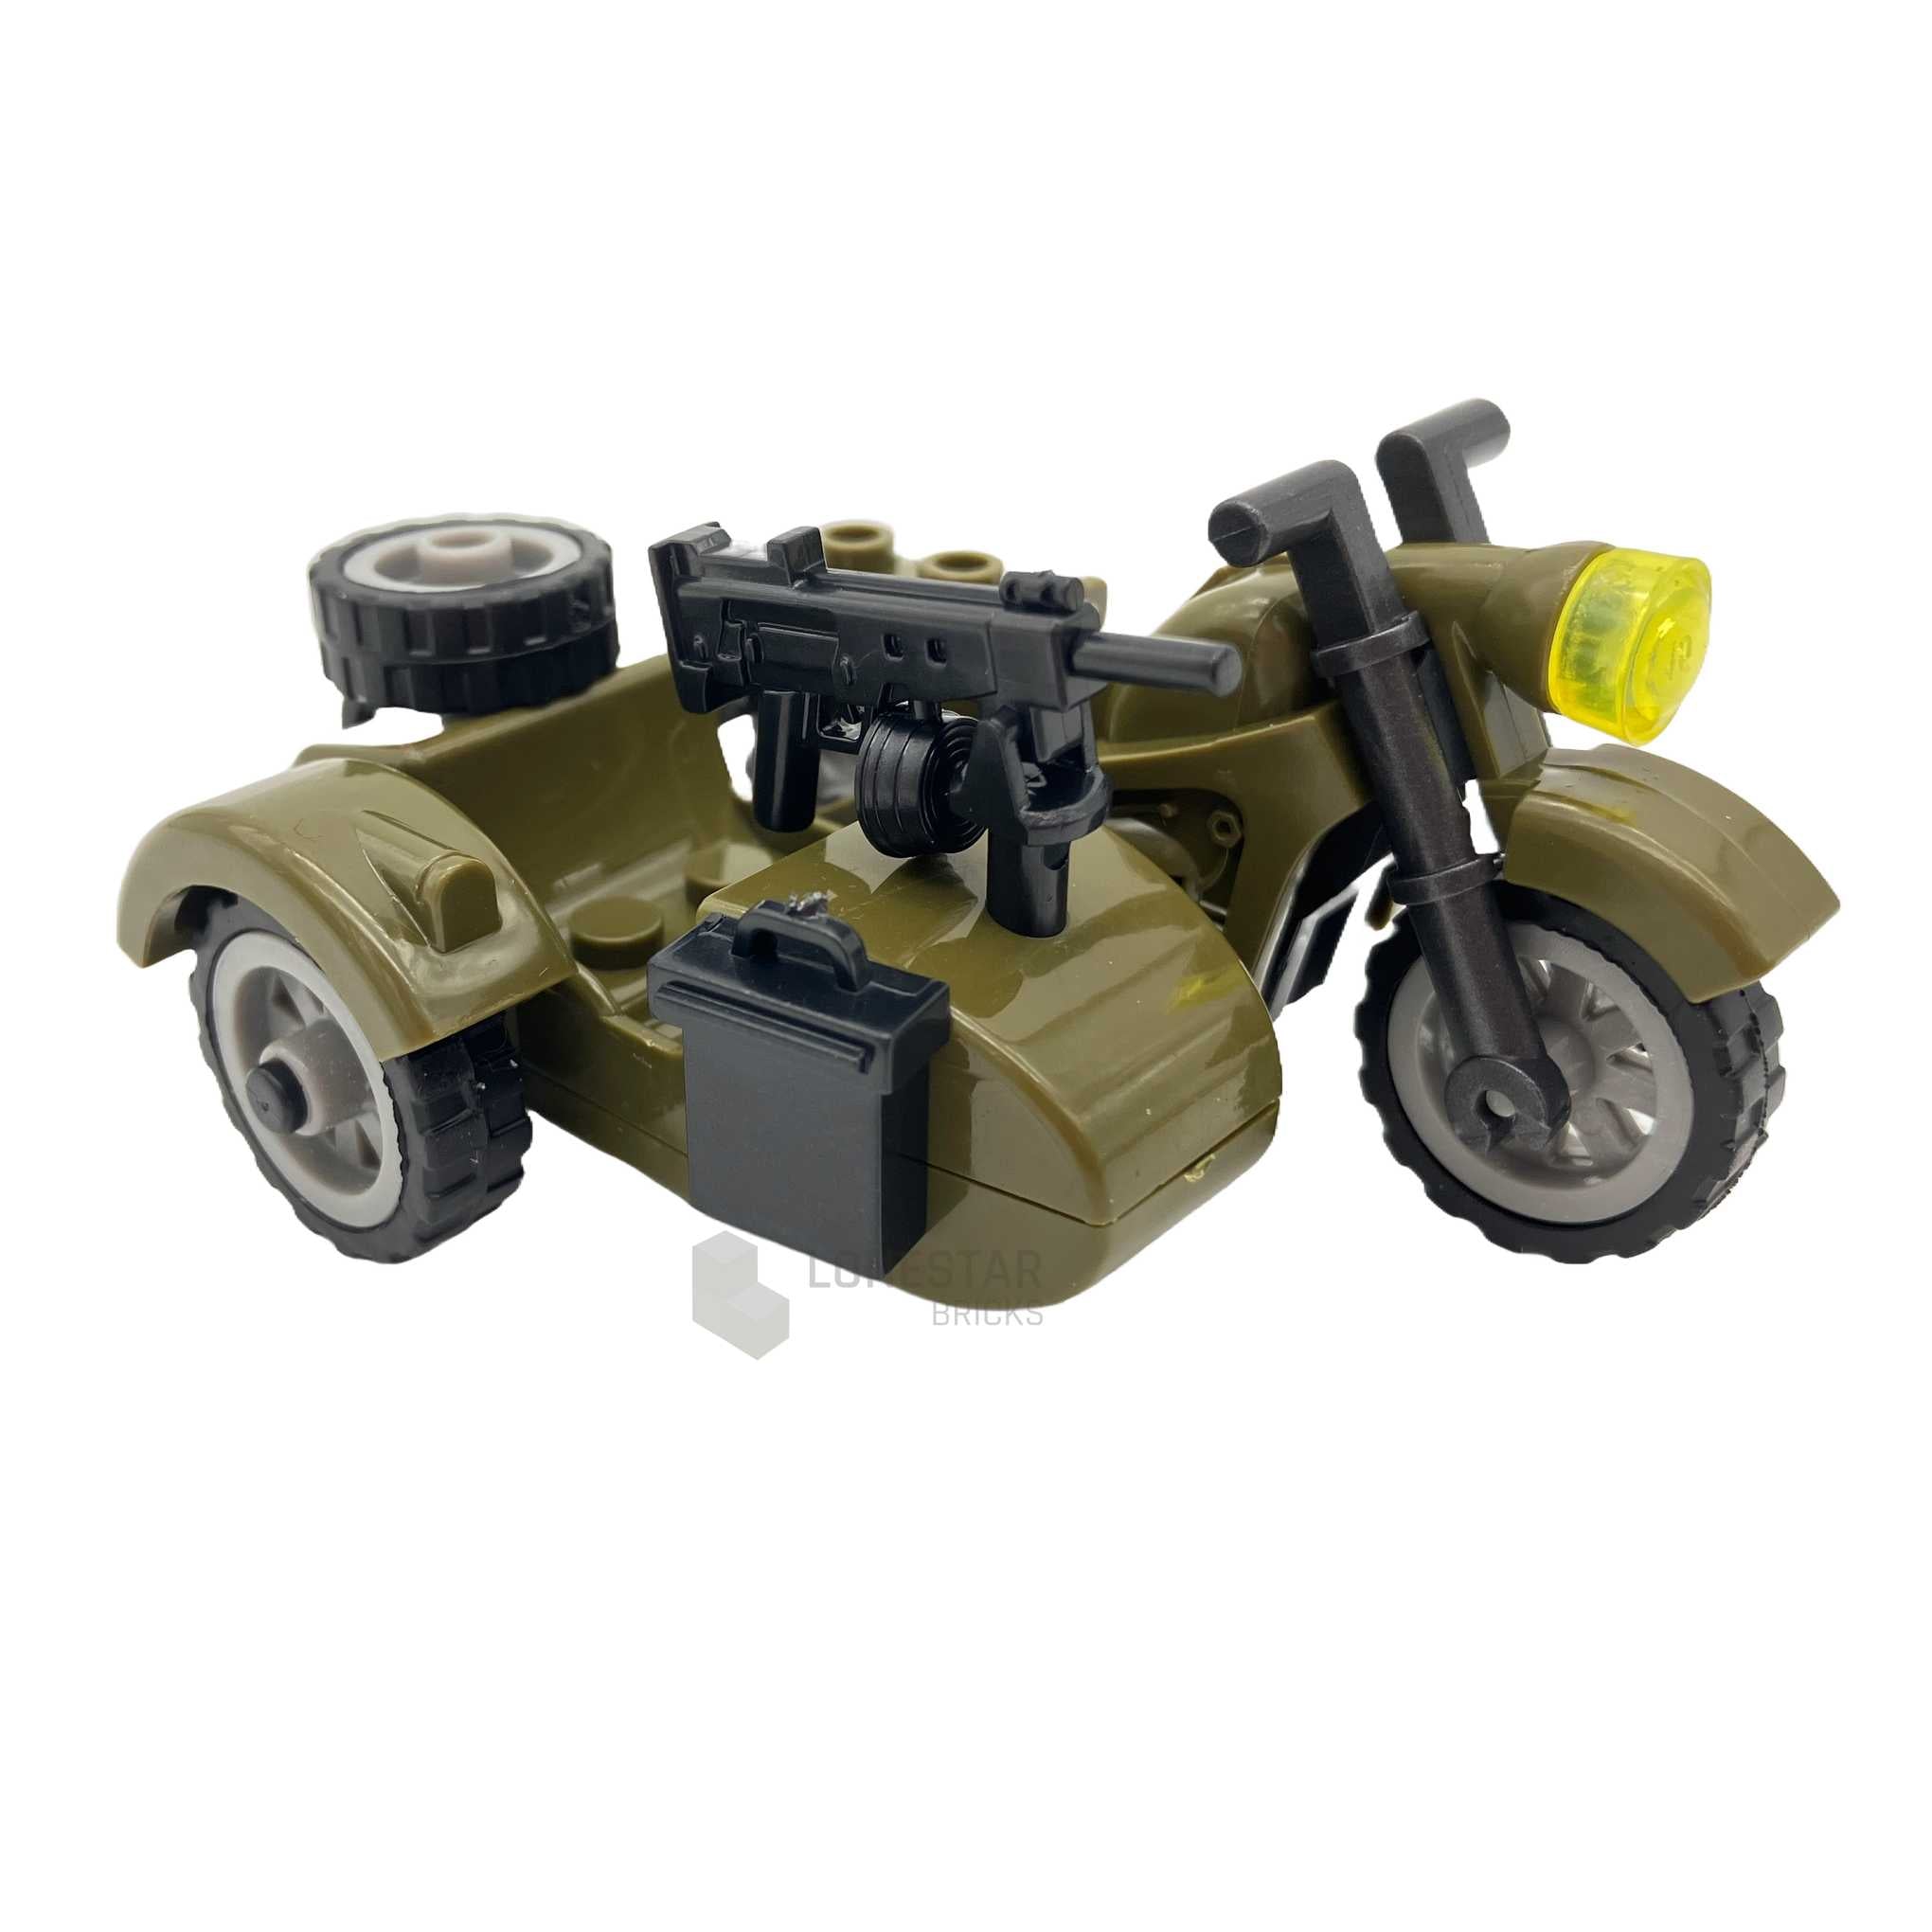 LB-70037 - Motorrad mit Beiwagen MG olive green (Lonestar Bricks)